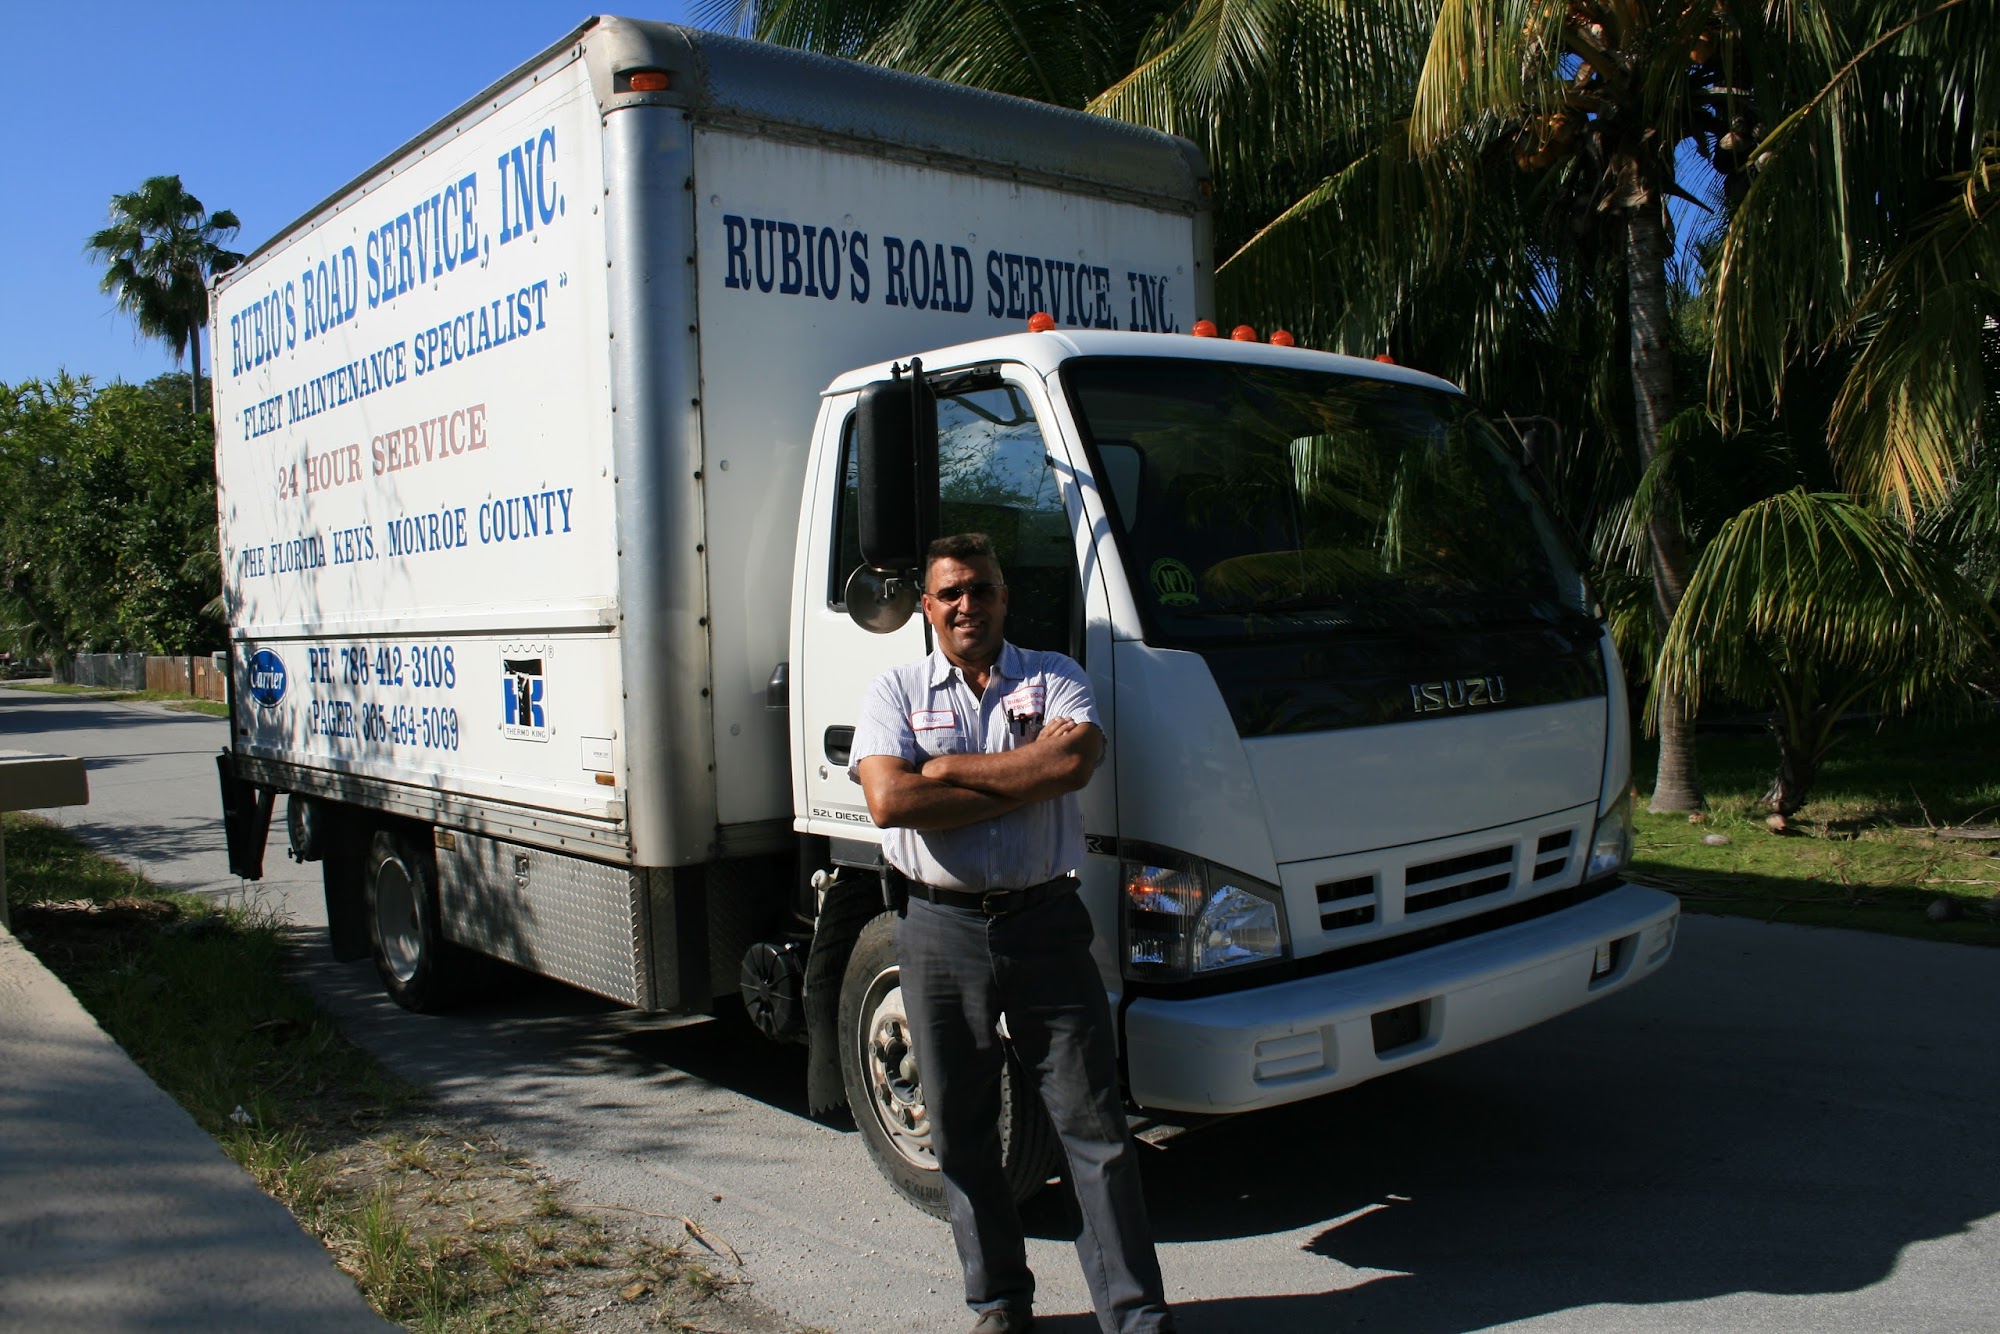 Rubio's Road Service